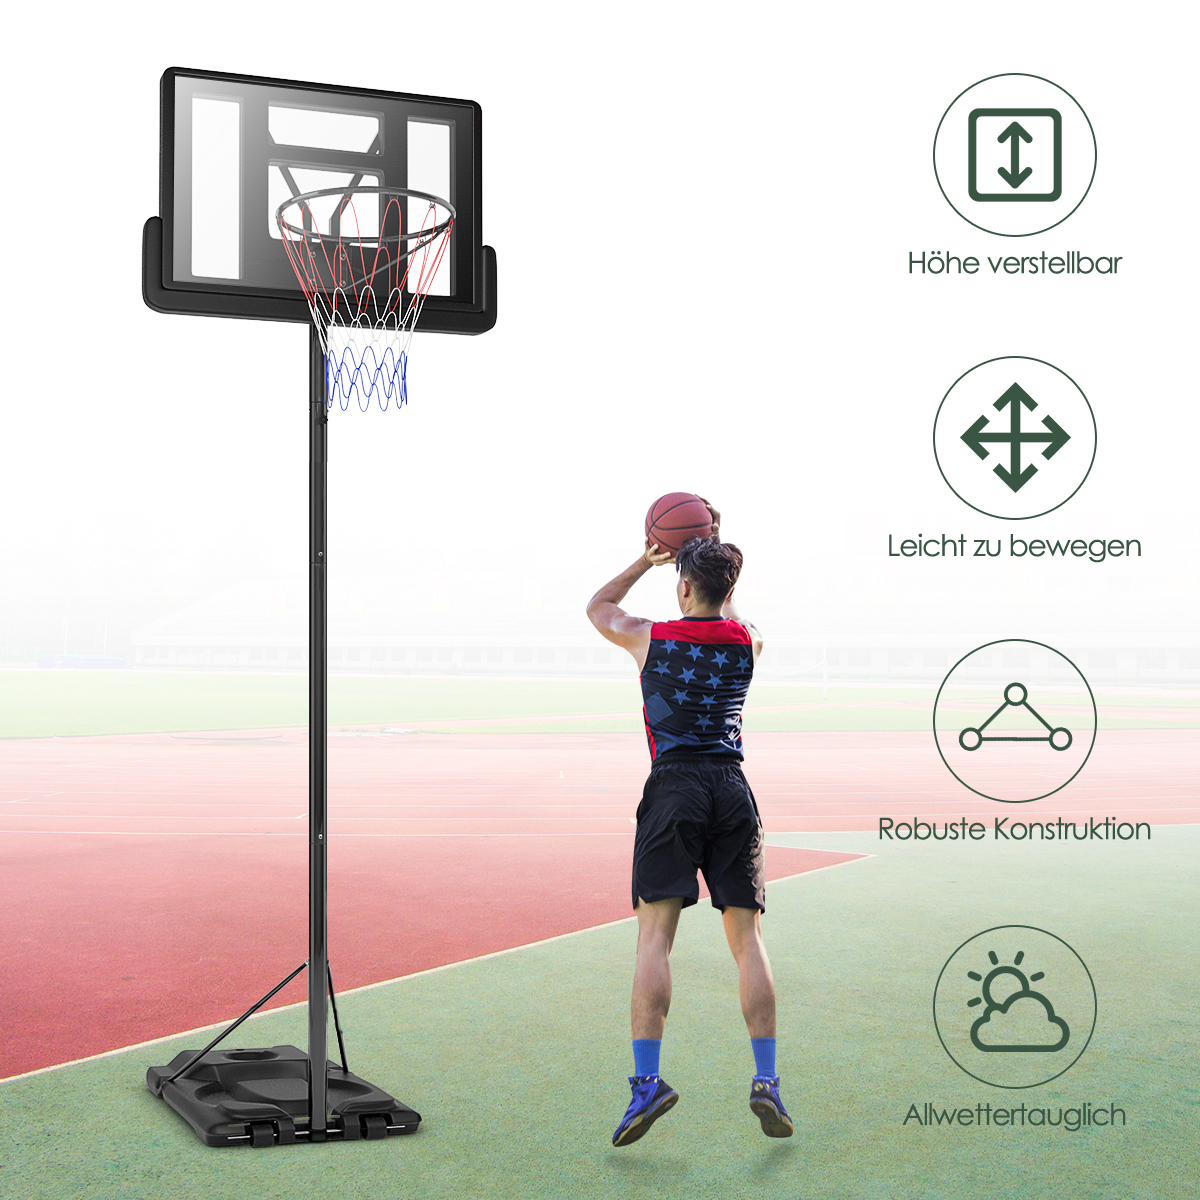 COSTWAY Basketballständer 260-305 cm höhenverstellbar Gartenspielzeug, Schwarz